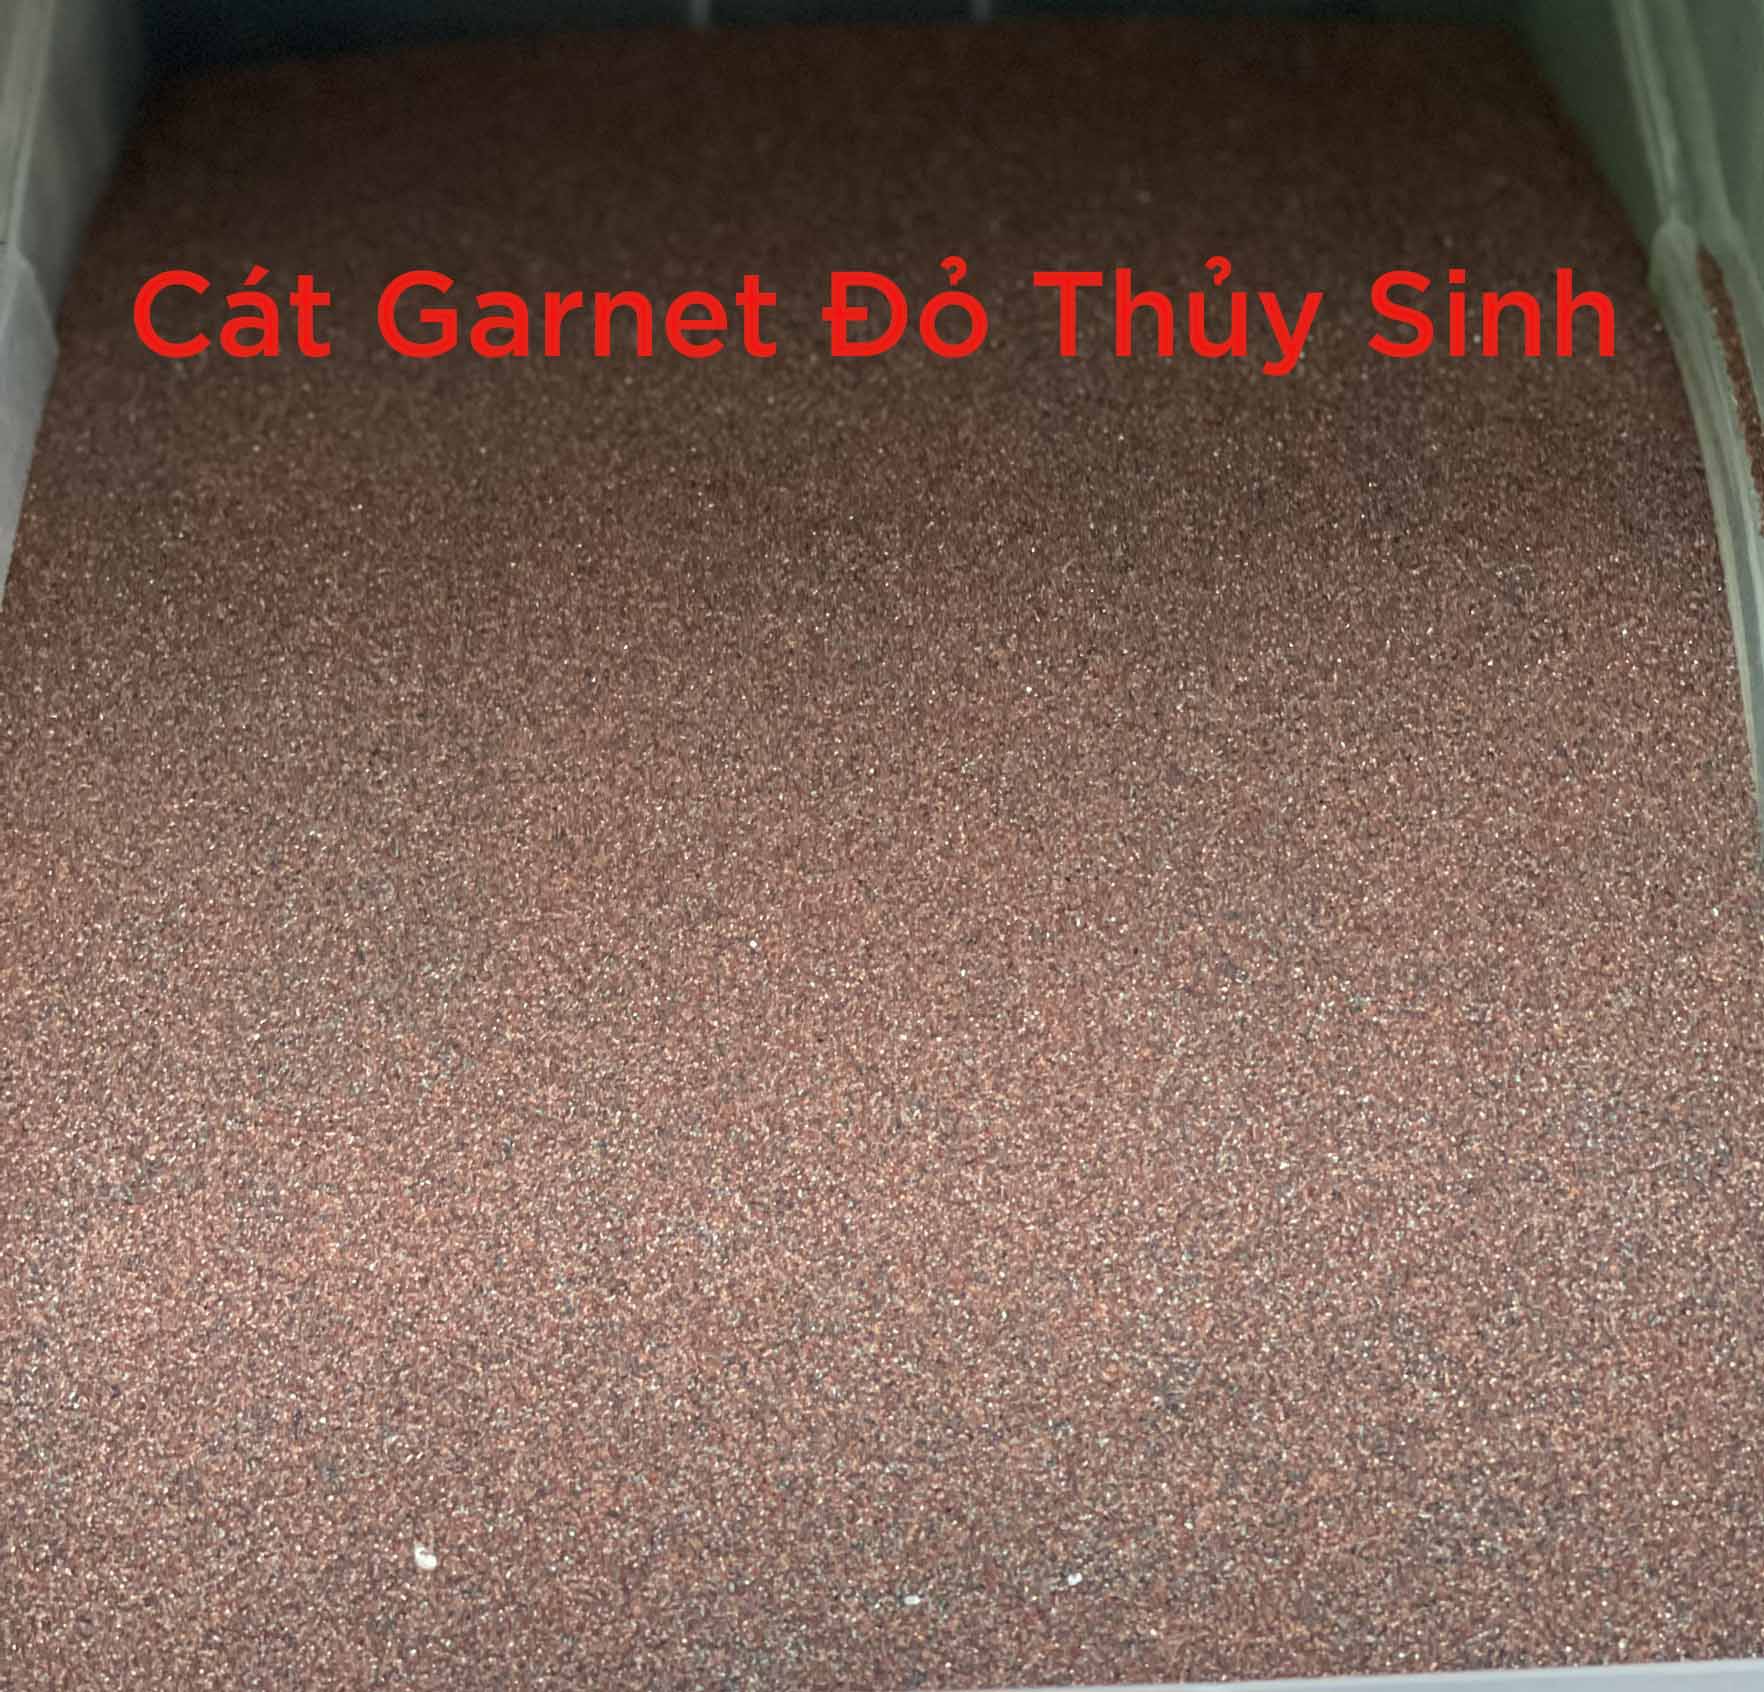 cát garnet, cát garnet thủy sinh, cát đỏ garnet, cát garnet đỏ